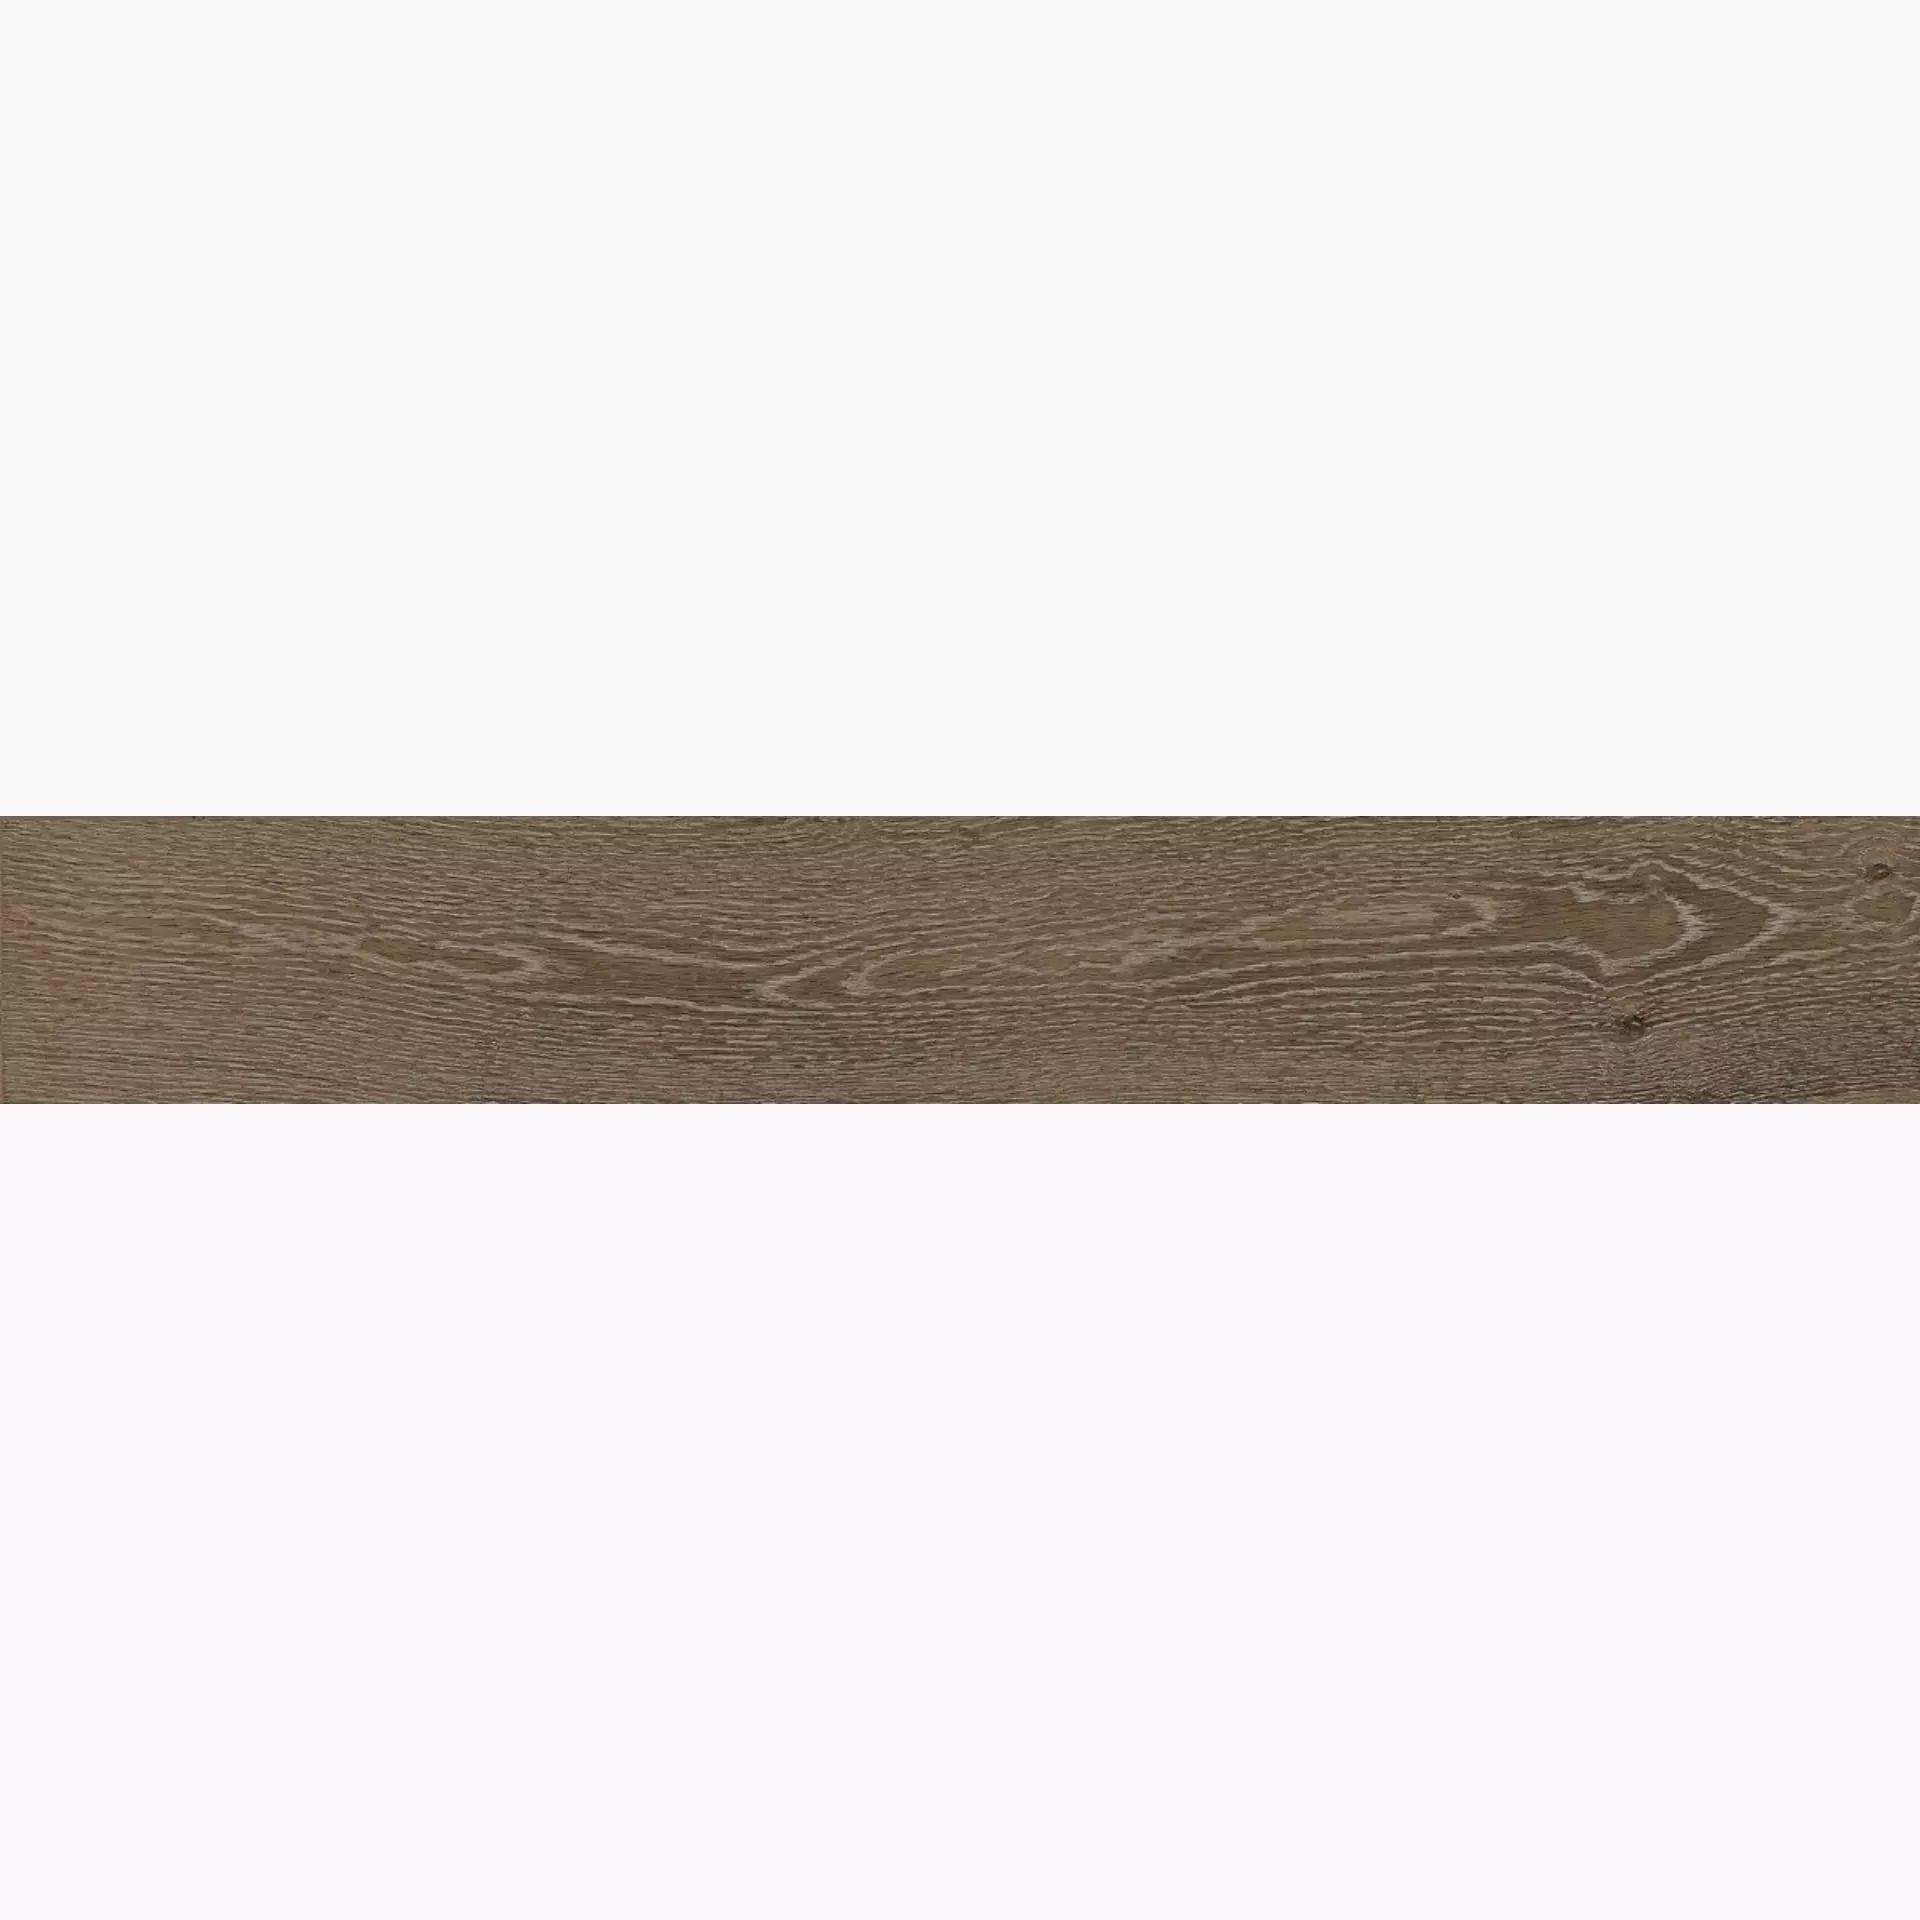 Bodenfliese,Wandfliese Marazzi Treverkcharme Brown Naturale – Matt Brown MM94 matt natur 10x70cm 8mm